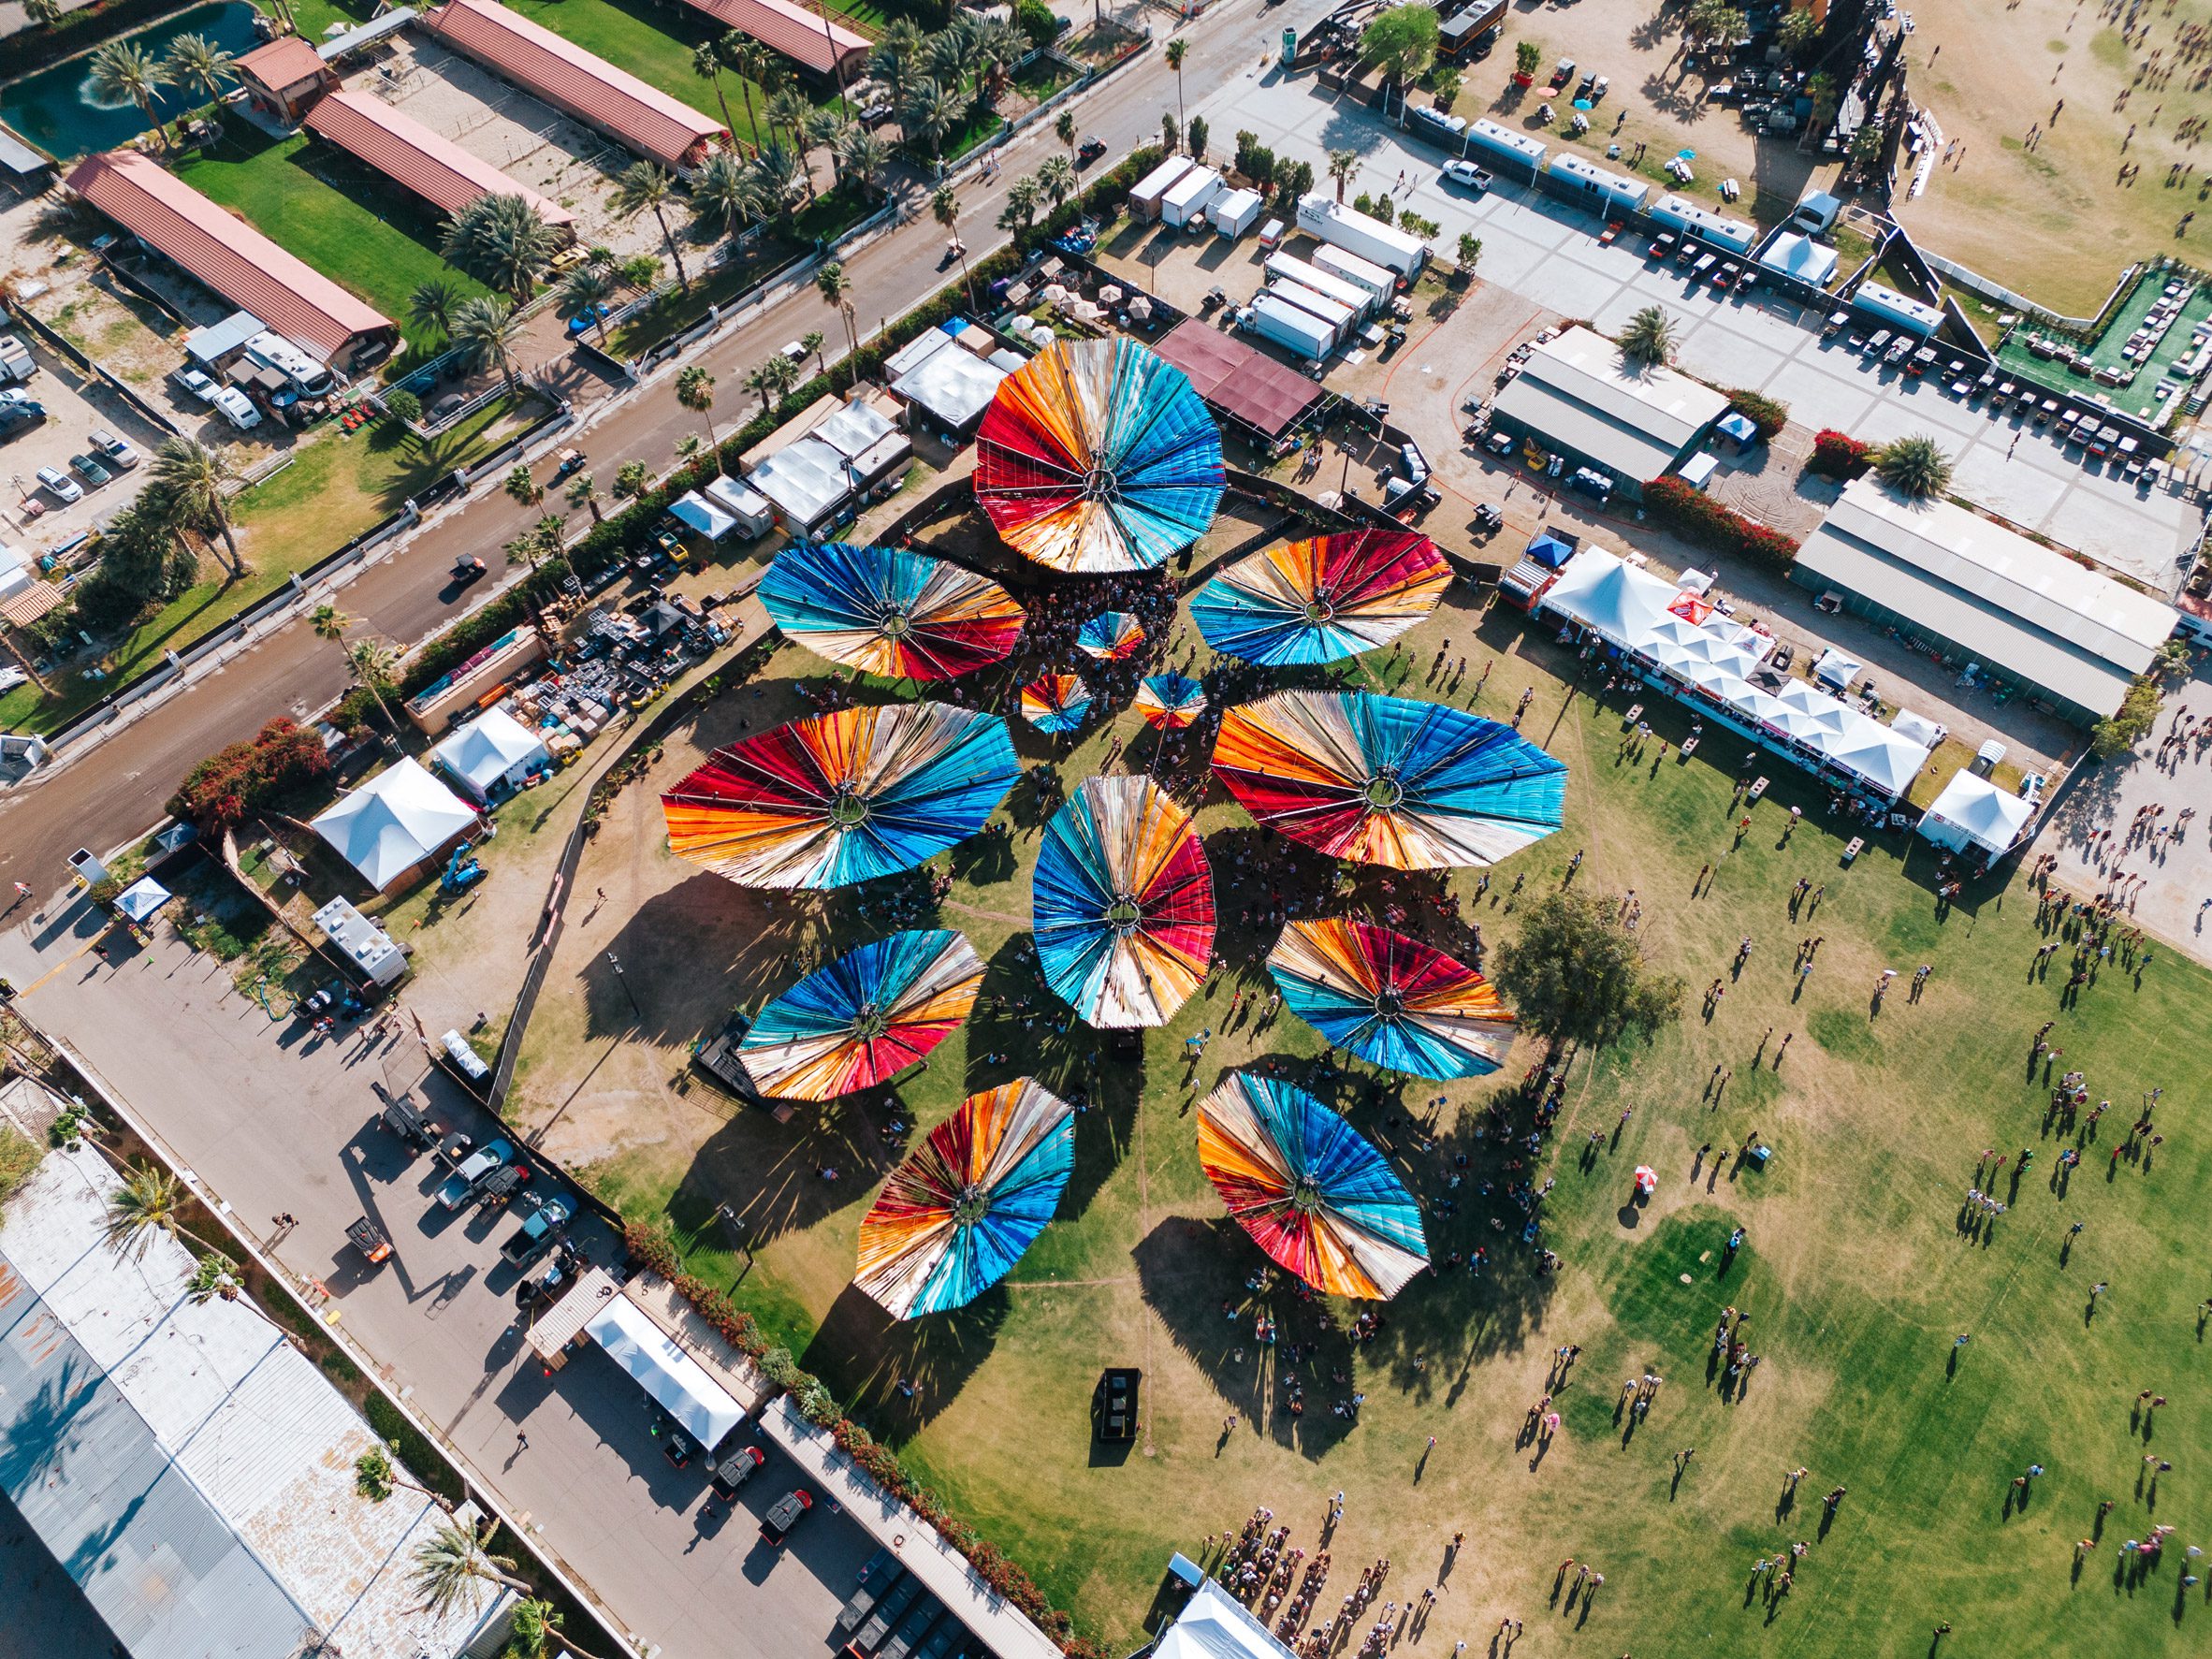 Fabric installations for Coachella